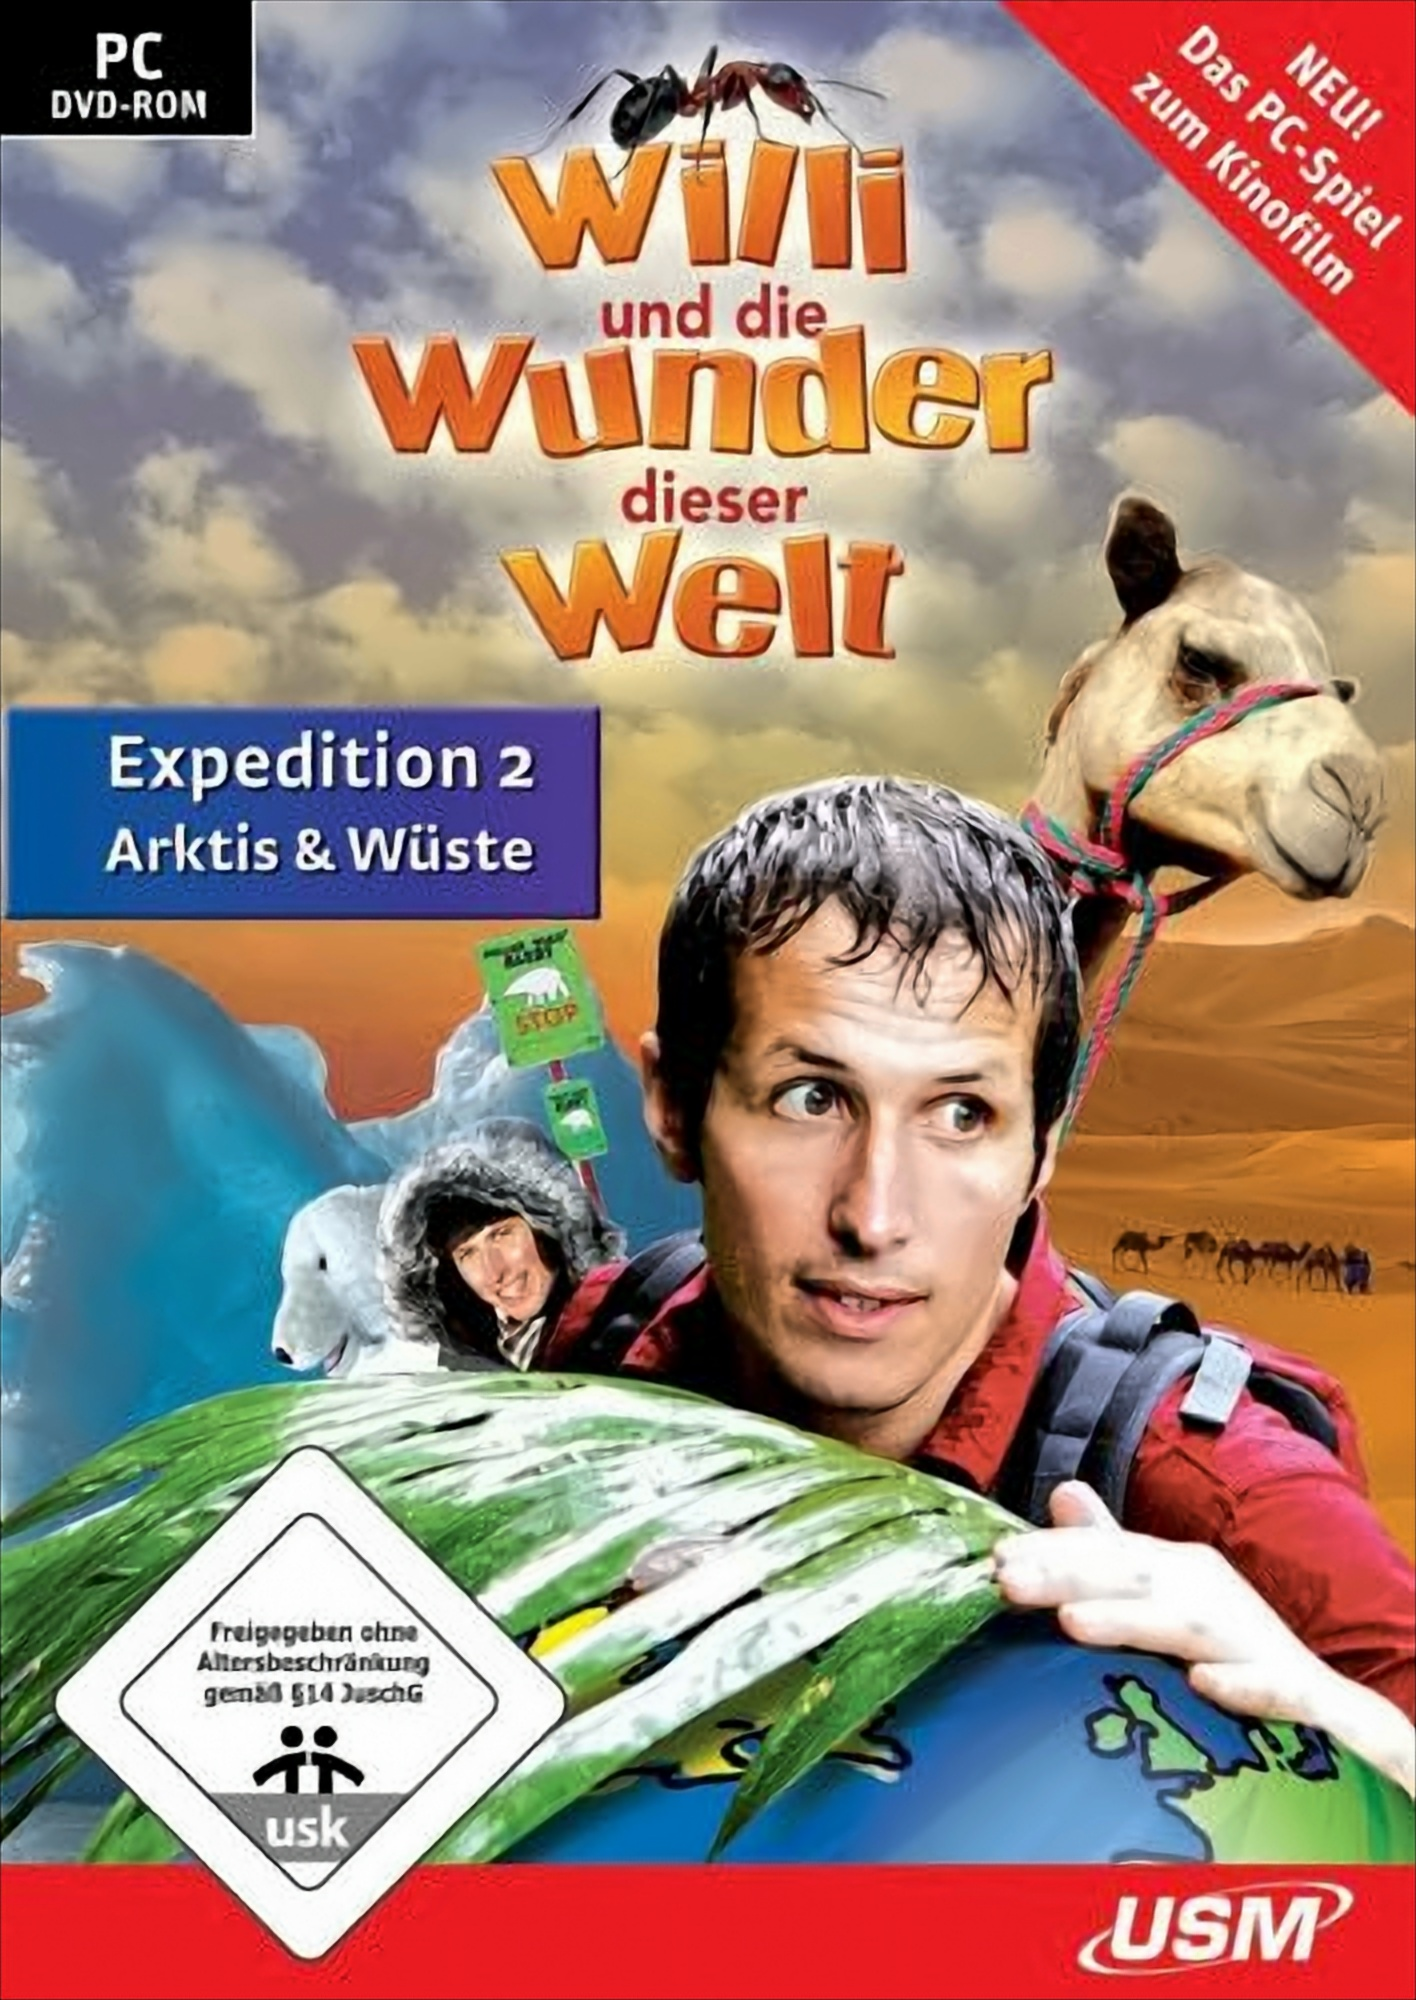 Willi und die Wunder Welt - Arktis Wüste [PC] - Expedition dieser 2 - 